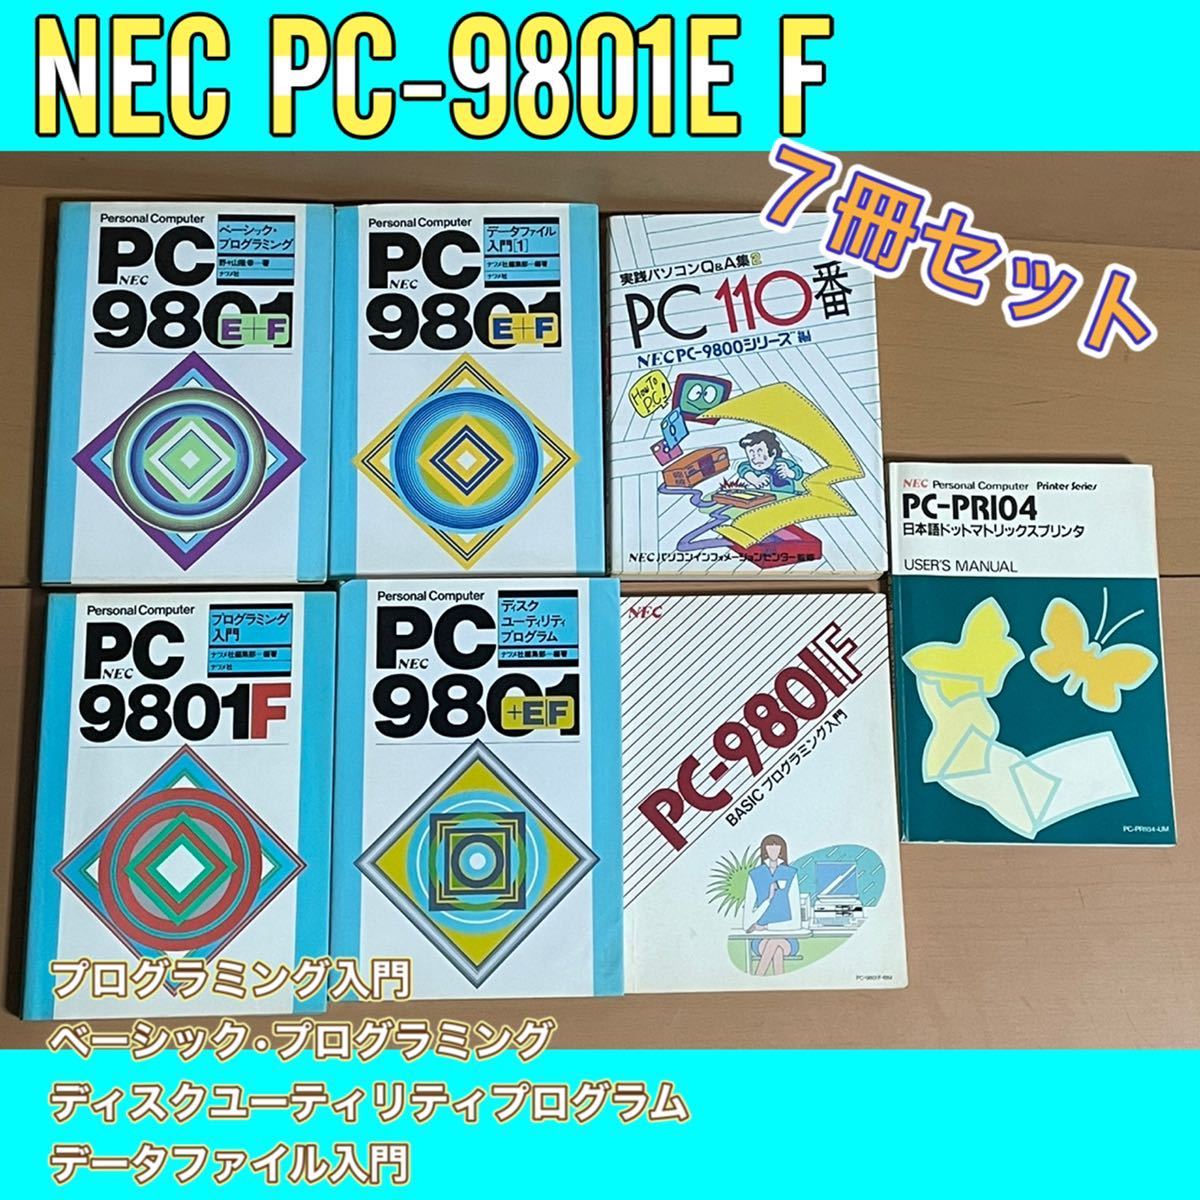 O303.2NEC PC-9801E F BASICプログラミング入門 プログラミング言語 データファイル ディスクユーティリティ ベーシック パソコン セット本